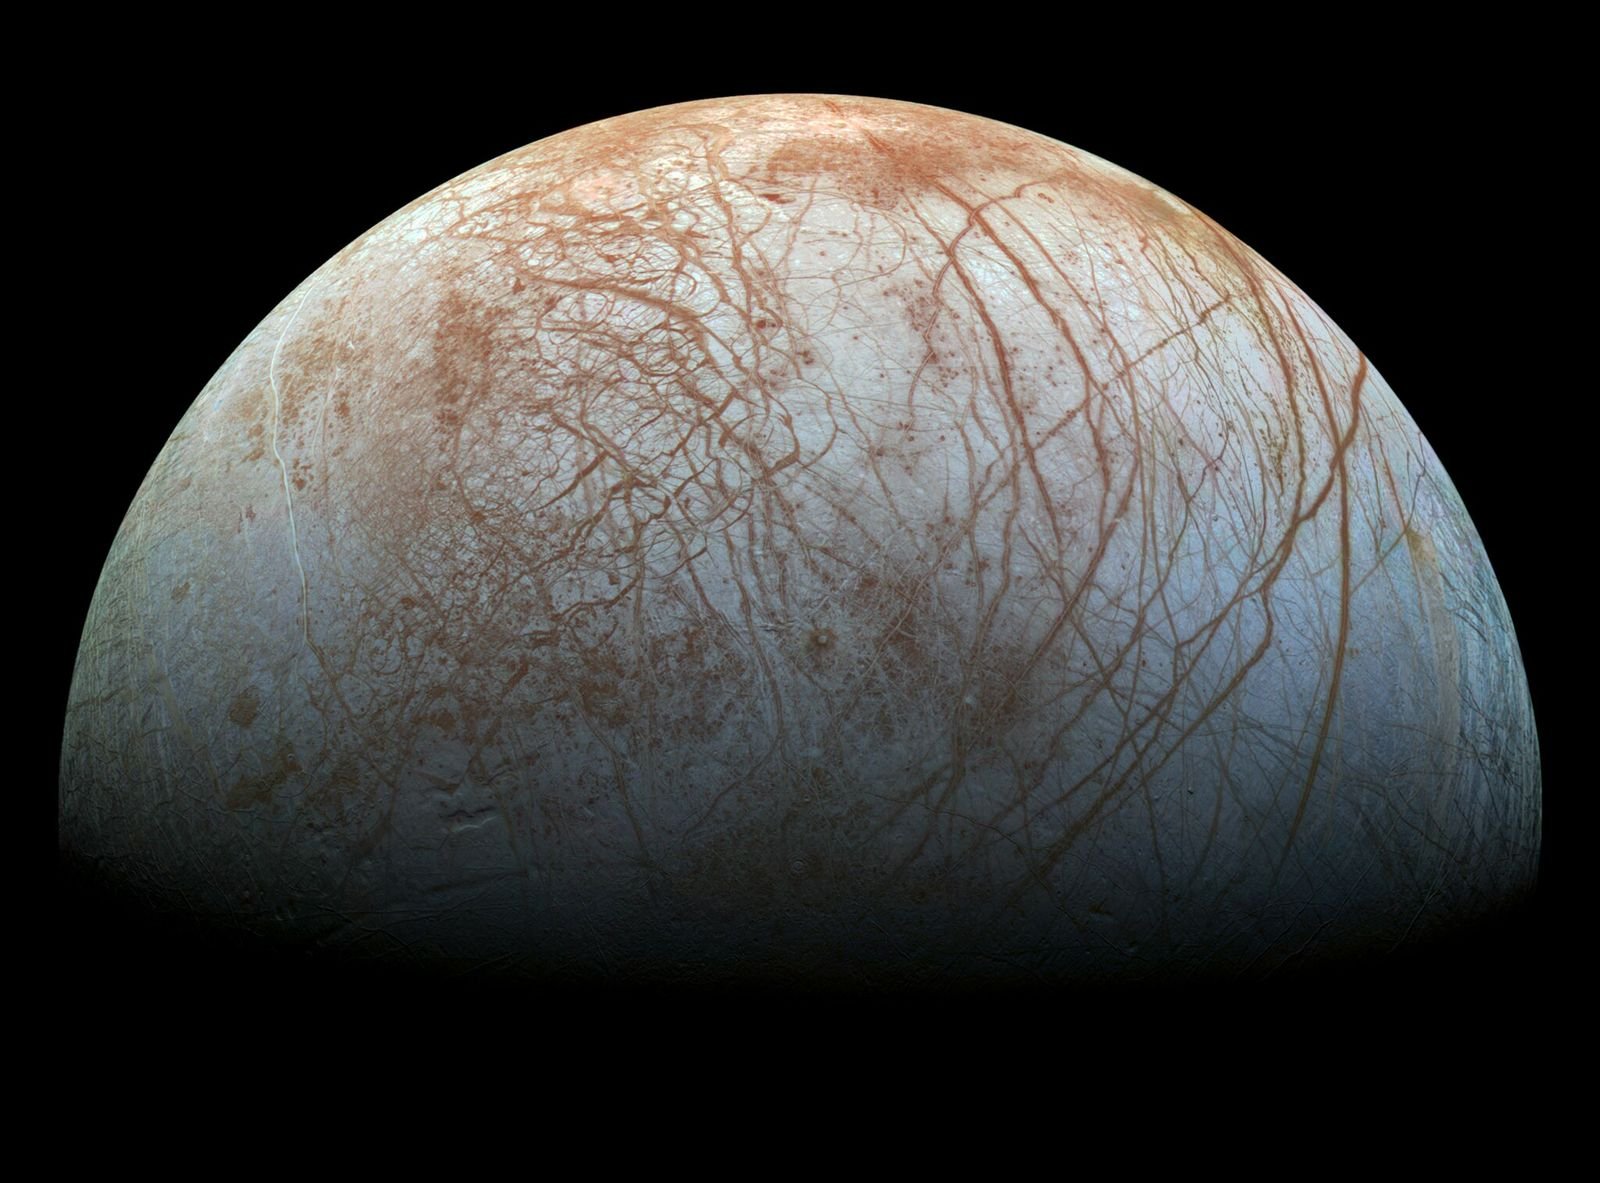 Europe, l'une des lunes glacées de Jupiter, pourrait briller dans le noir